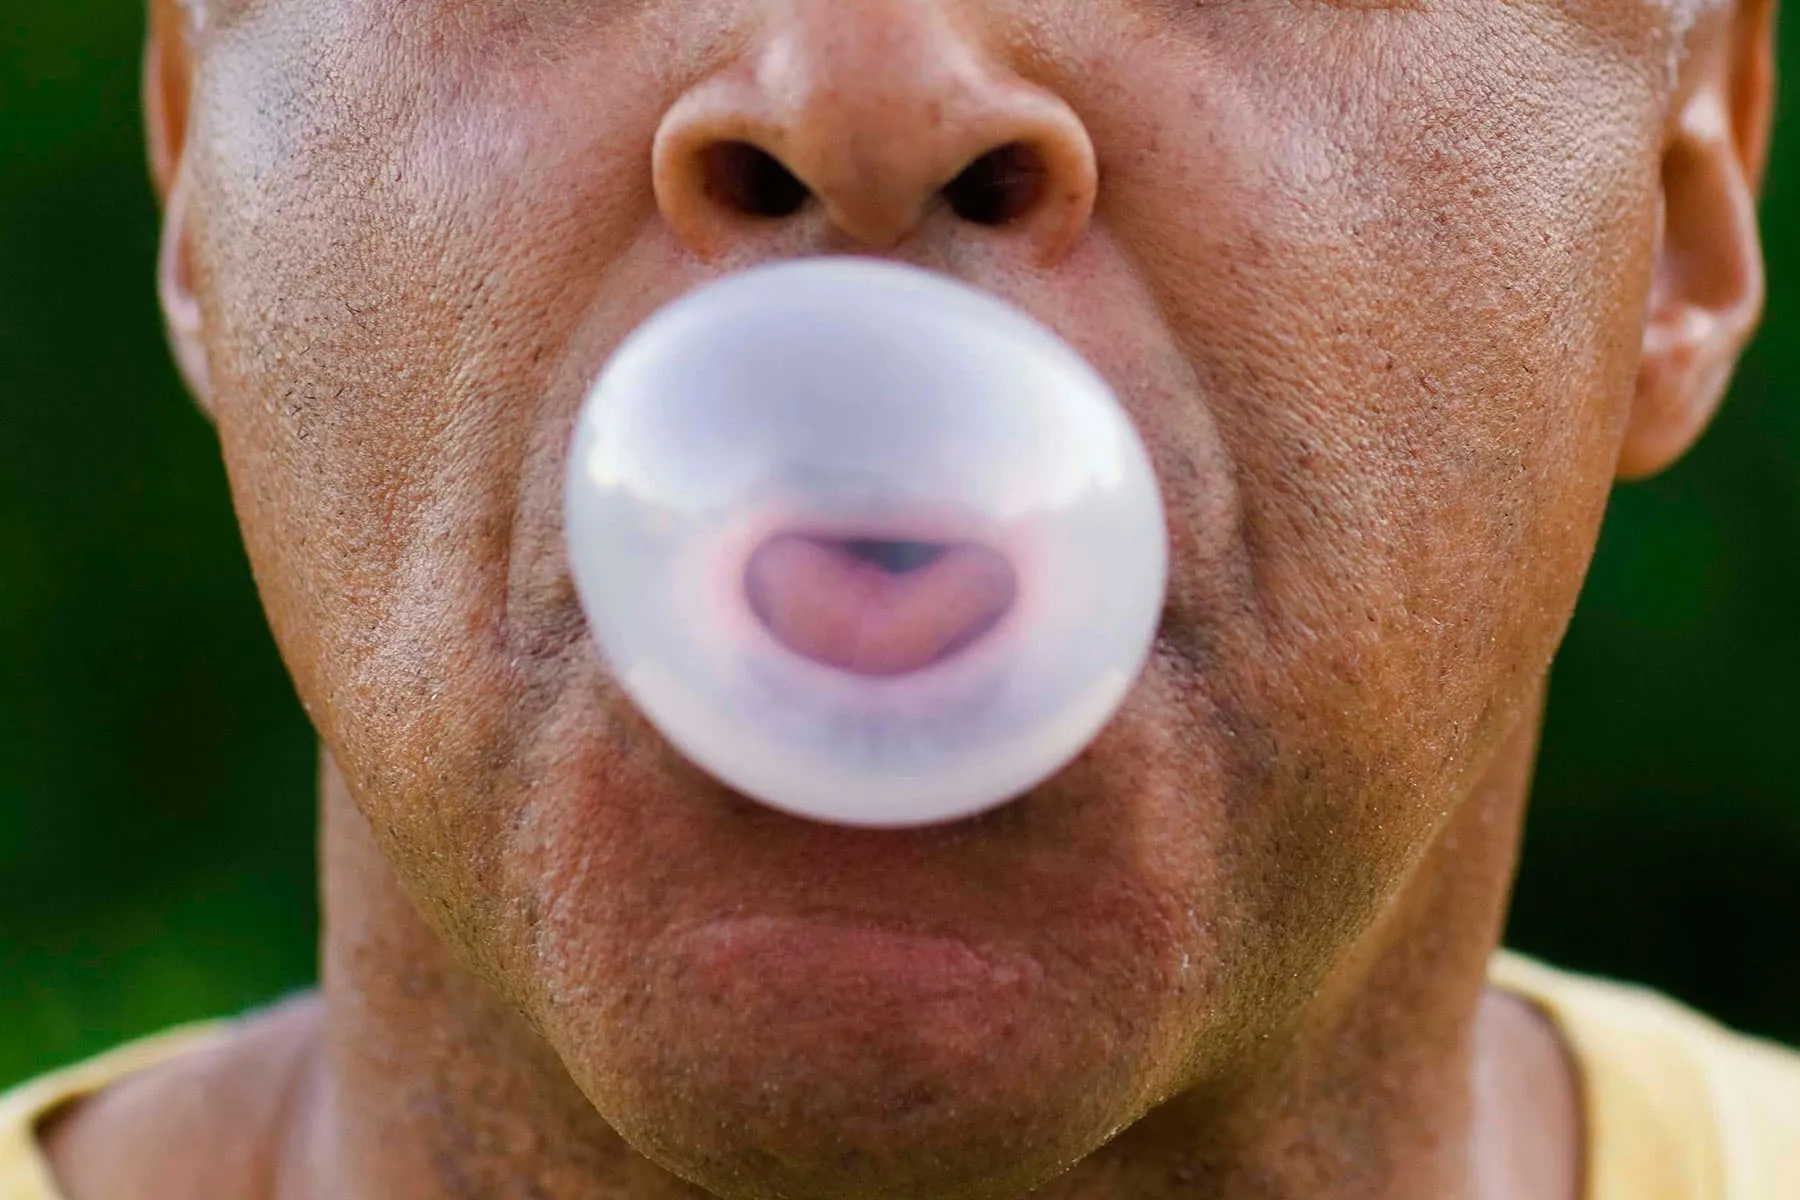 man blowing bubble gum